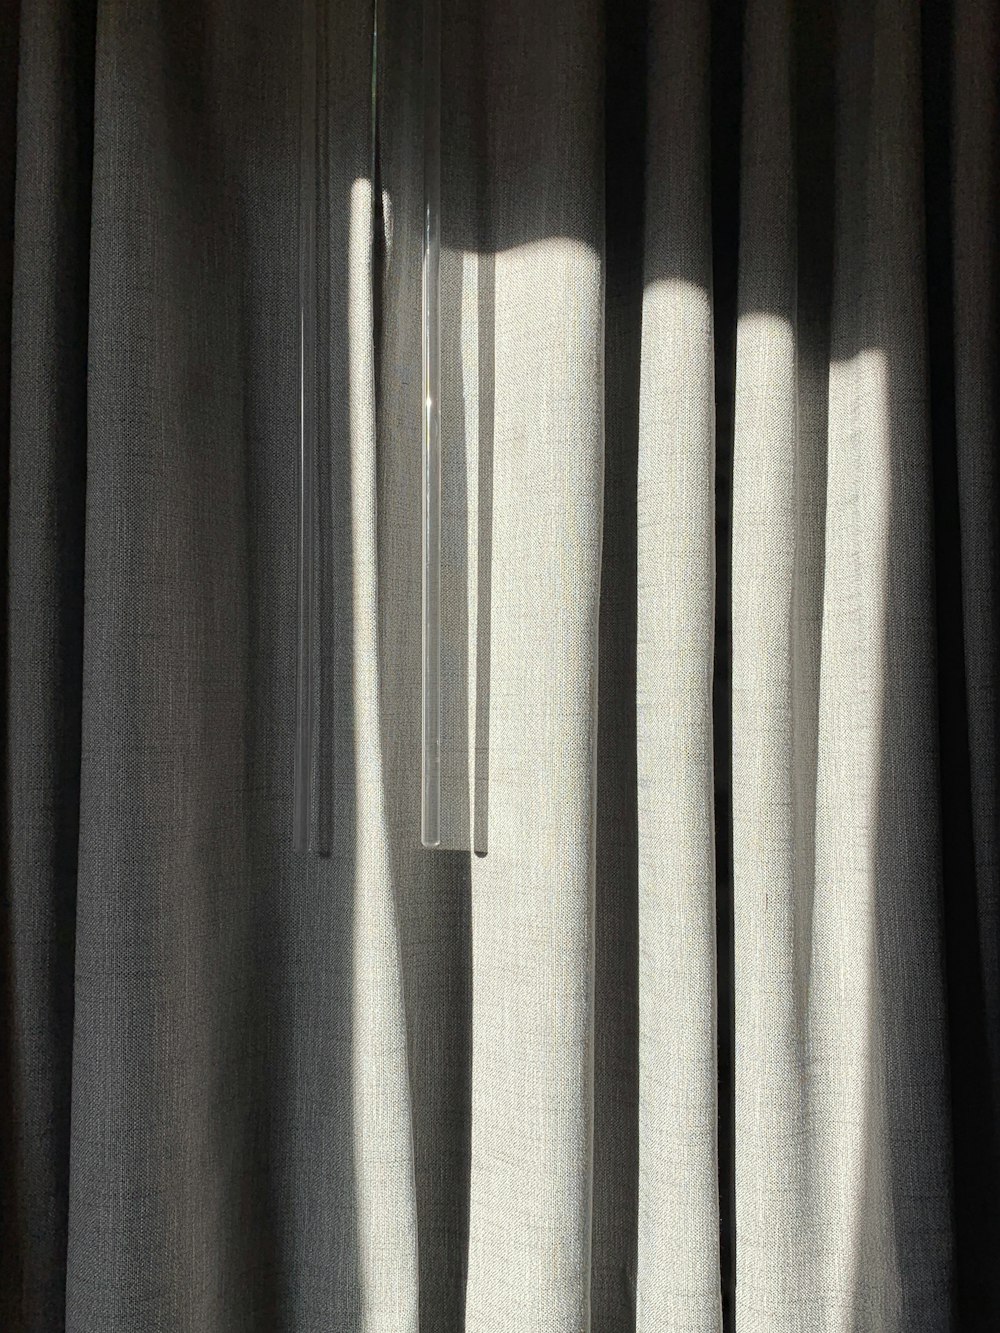 cortinas pode solucionar problemas sonoros